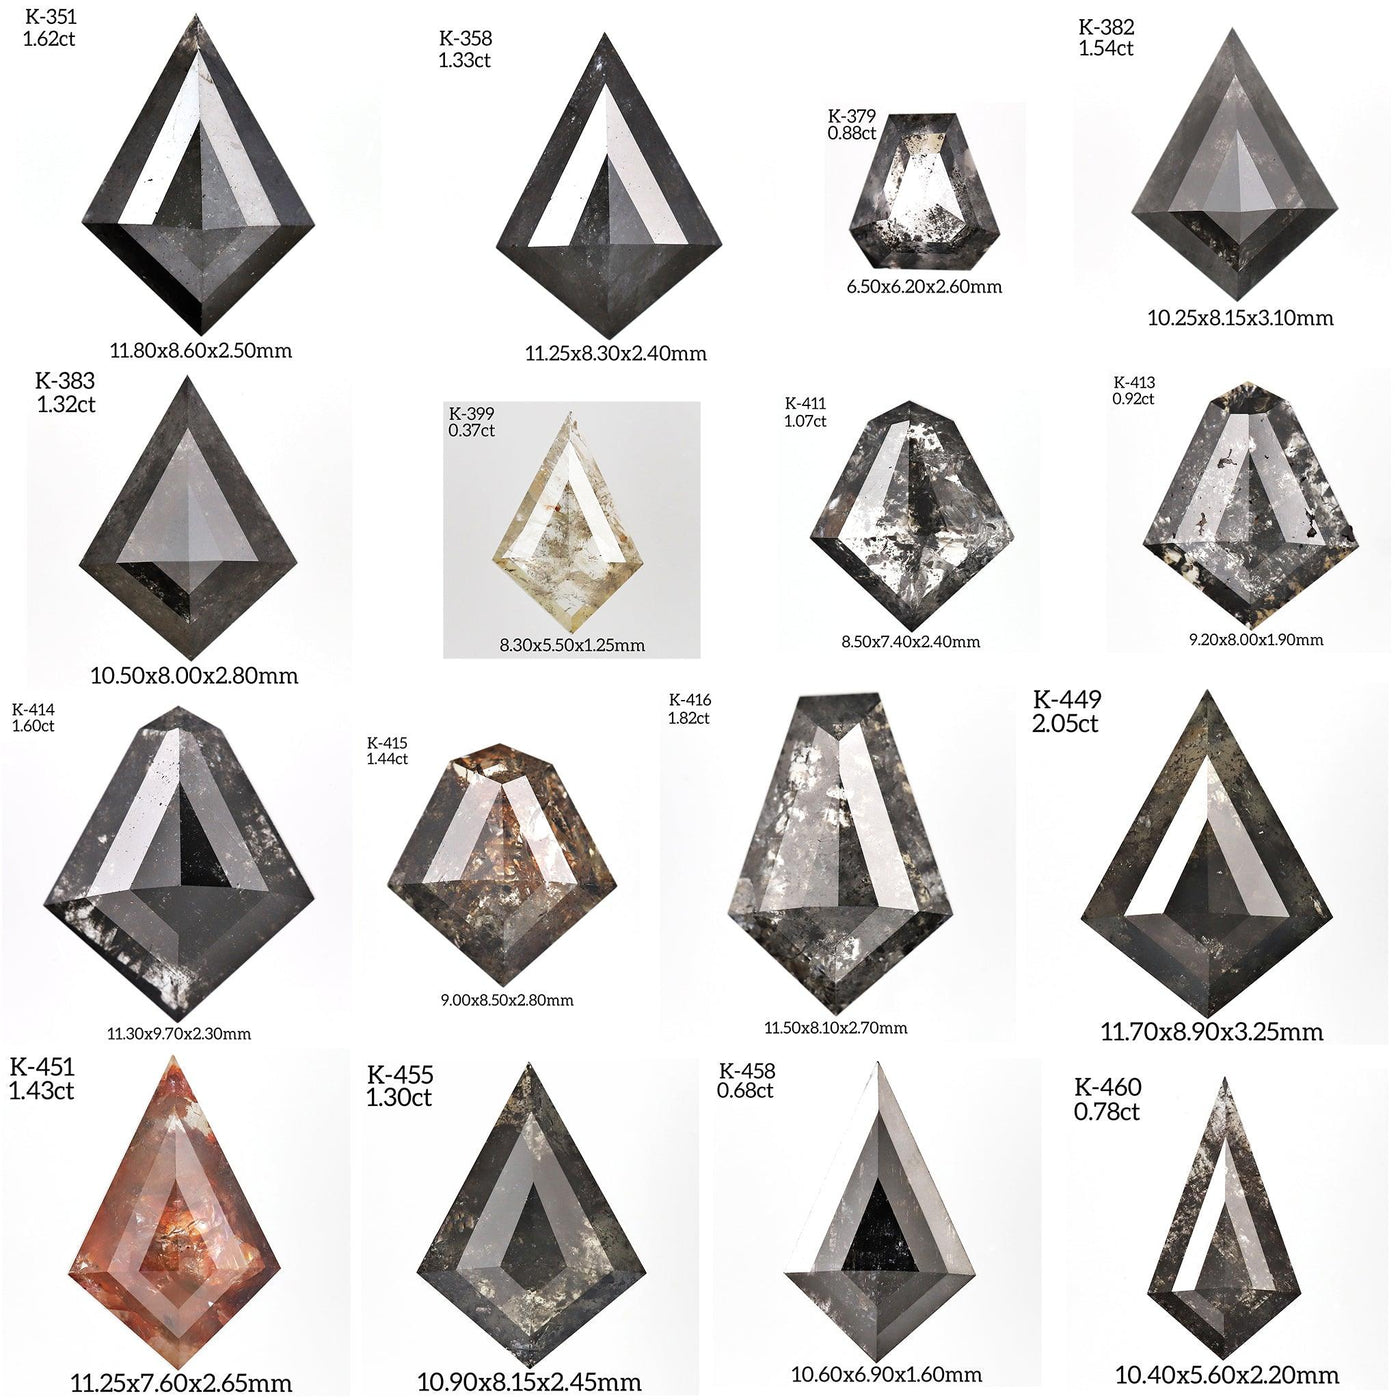 Salt and Pepper Diamond Ring | Engagement Ring | Kite Diamond Ring | Baguette Ring - Rubysta